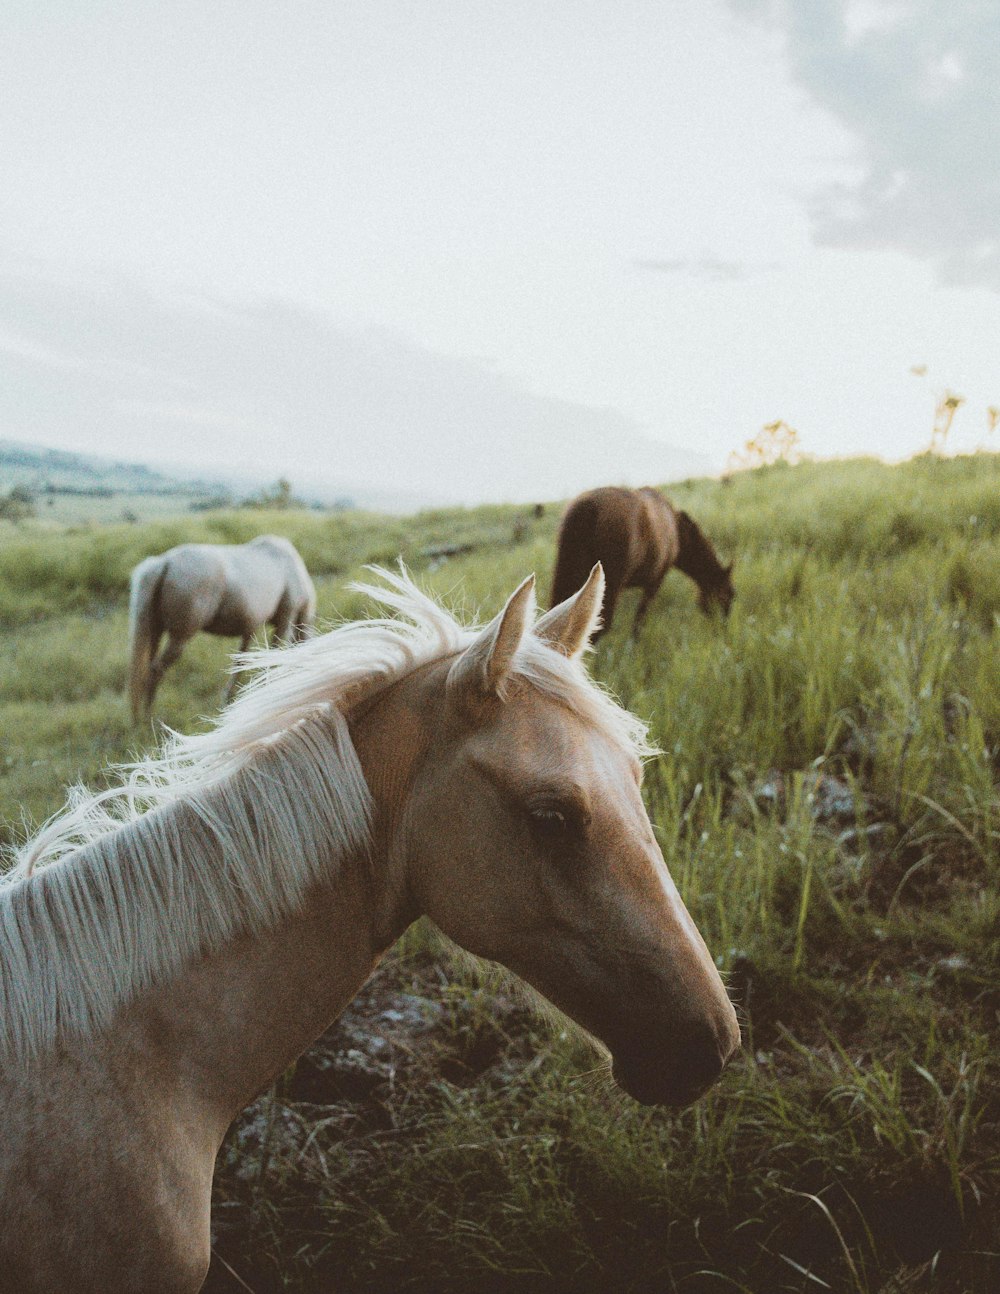 tilt-shift lens photography of horse herd on grassland during daytime